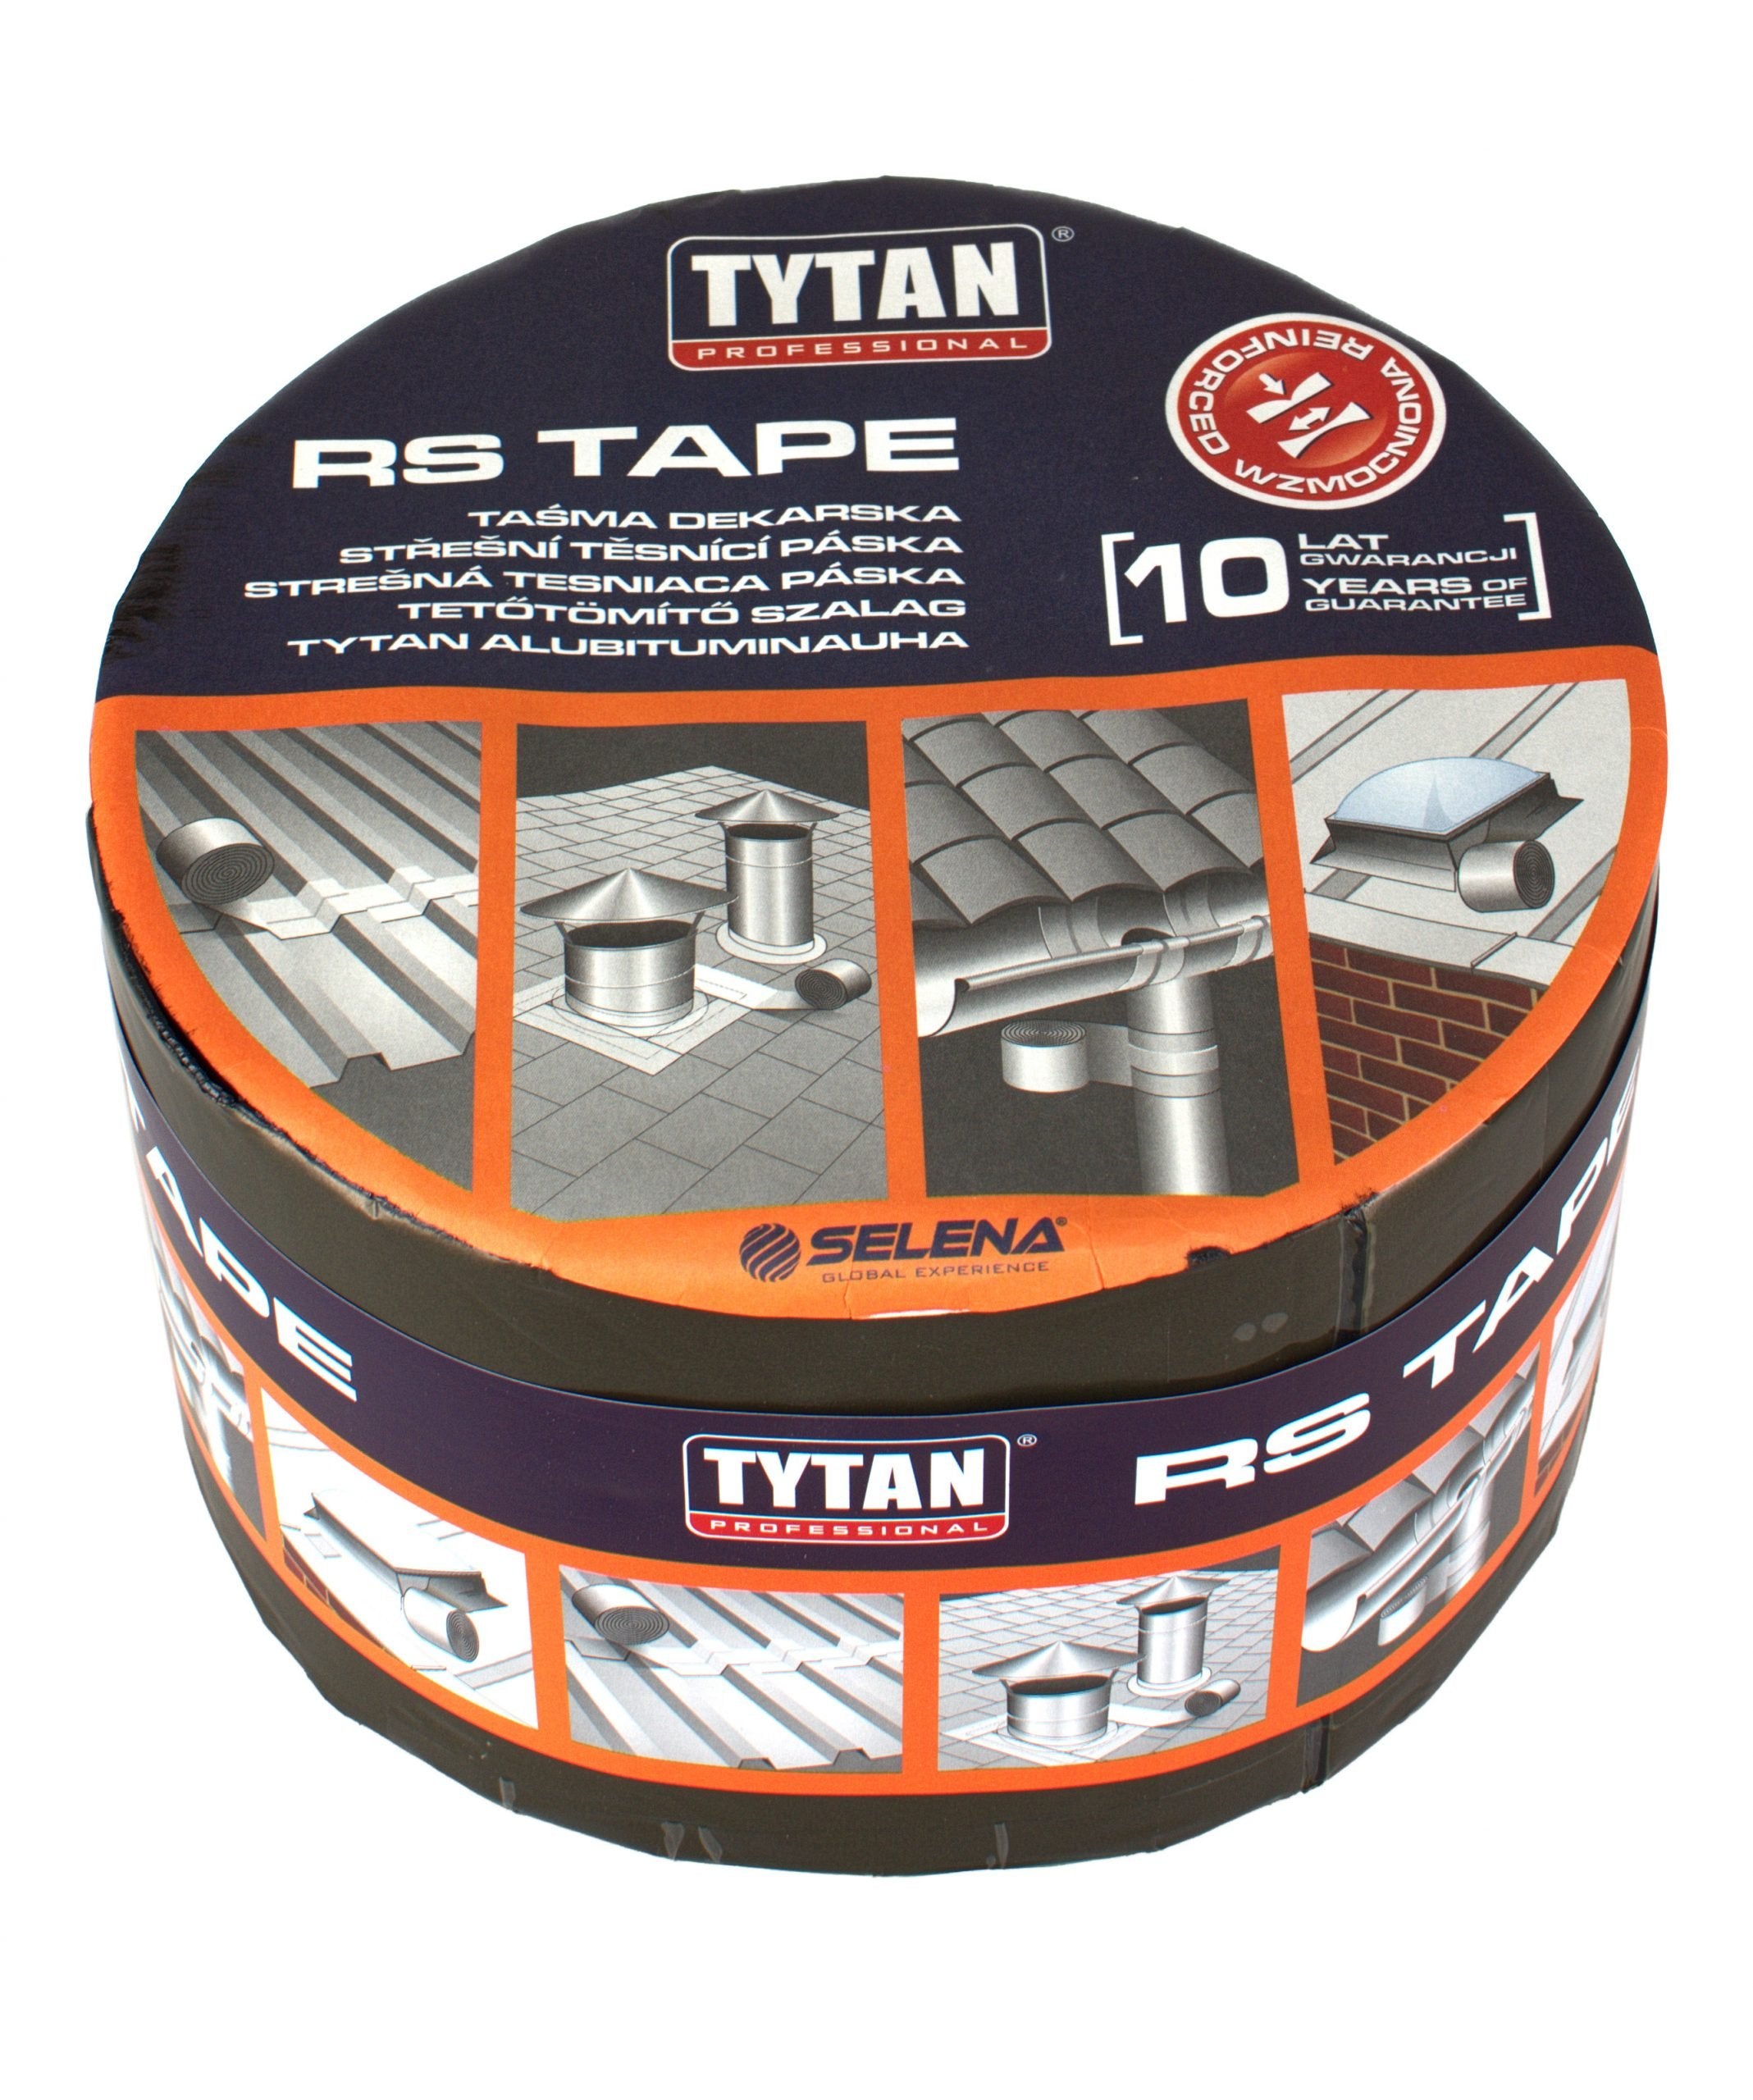 TYTAN RS TAPE Střešní těsnící páska bitumenová